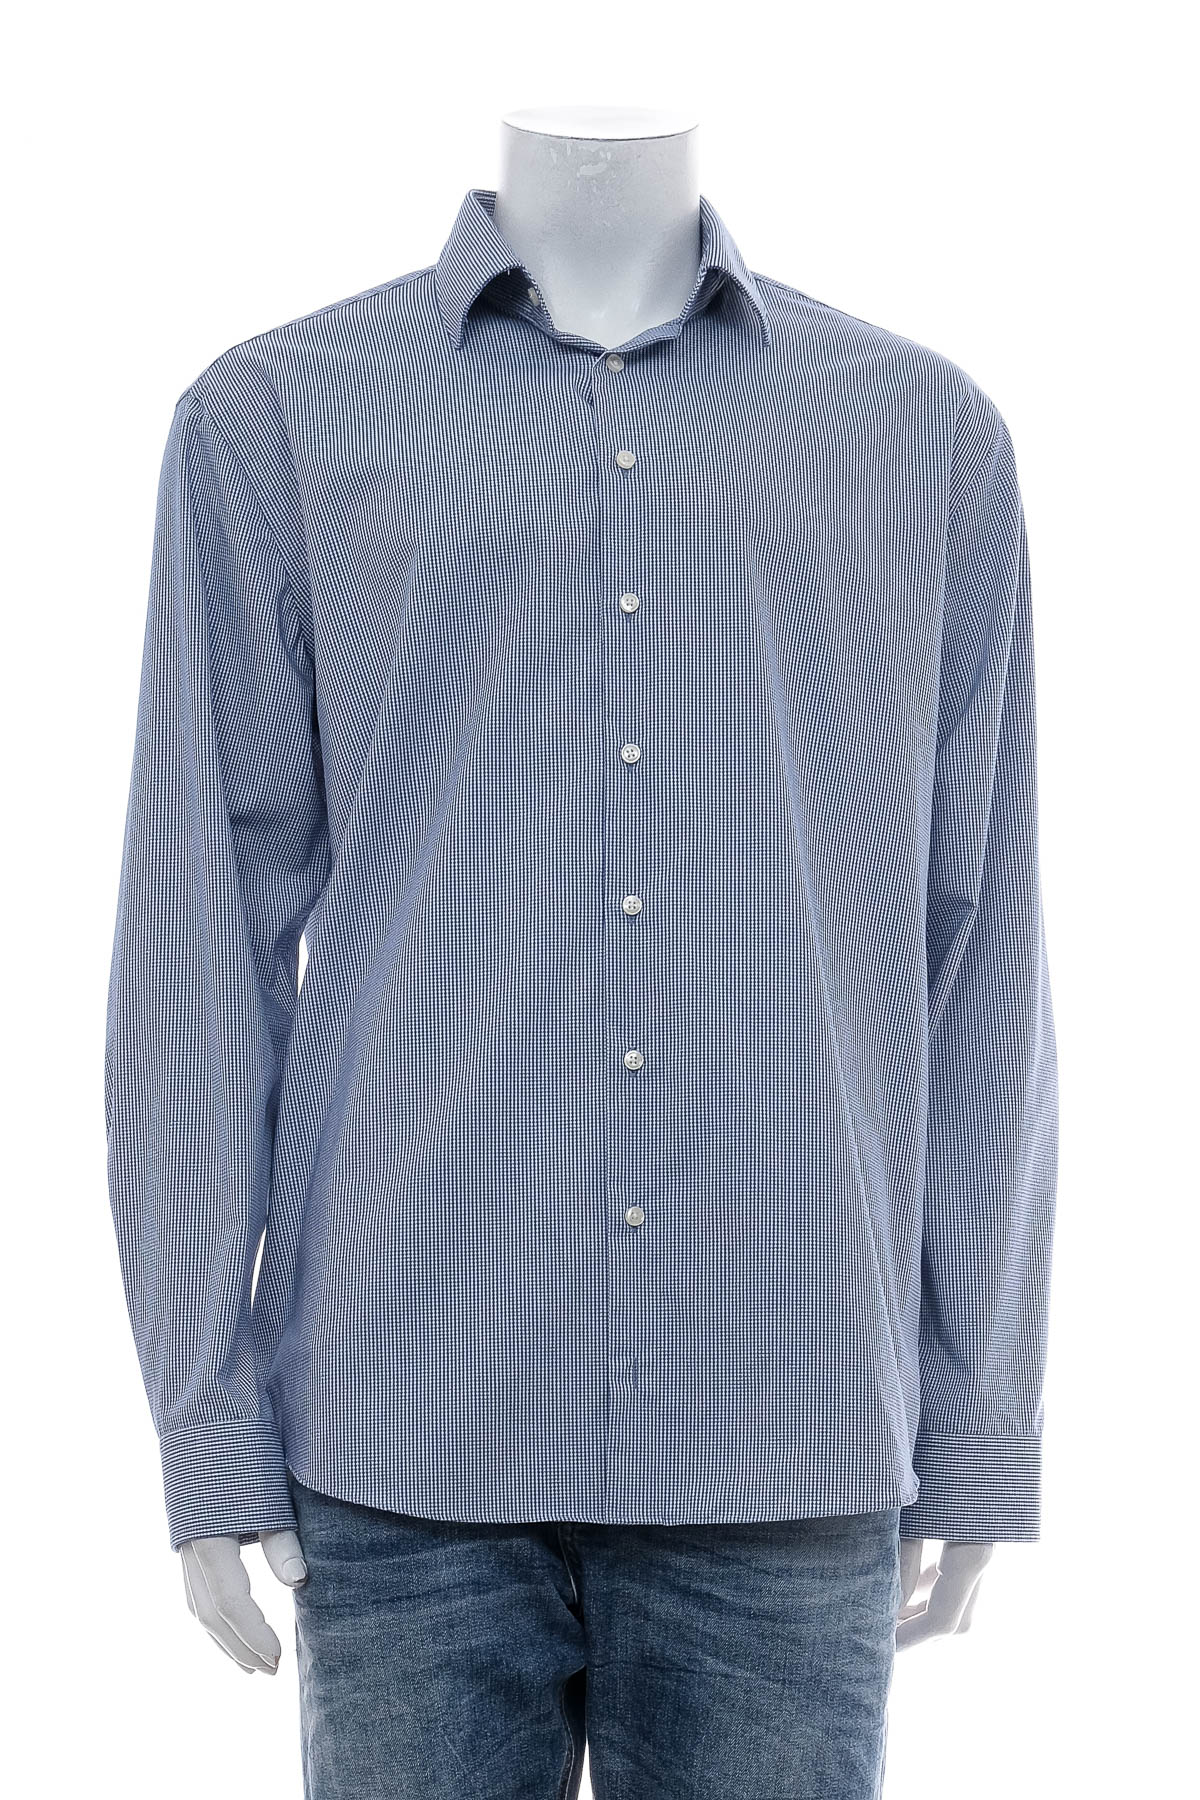 Ανδρικό πουκάμισο - Christian Berg - 0